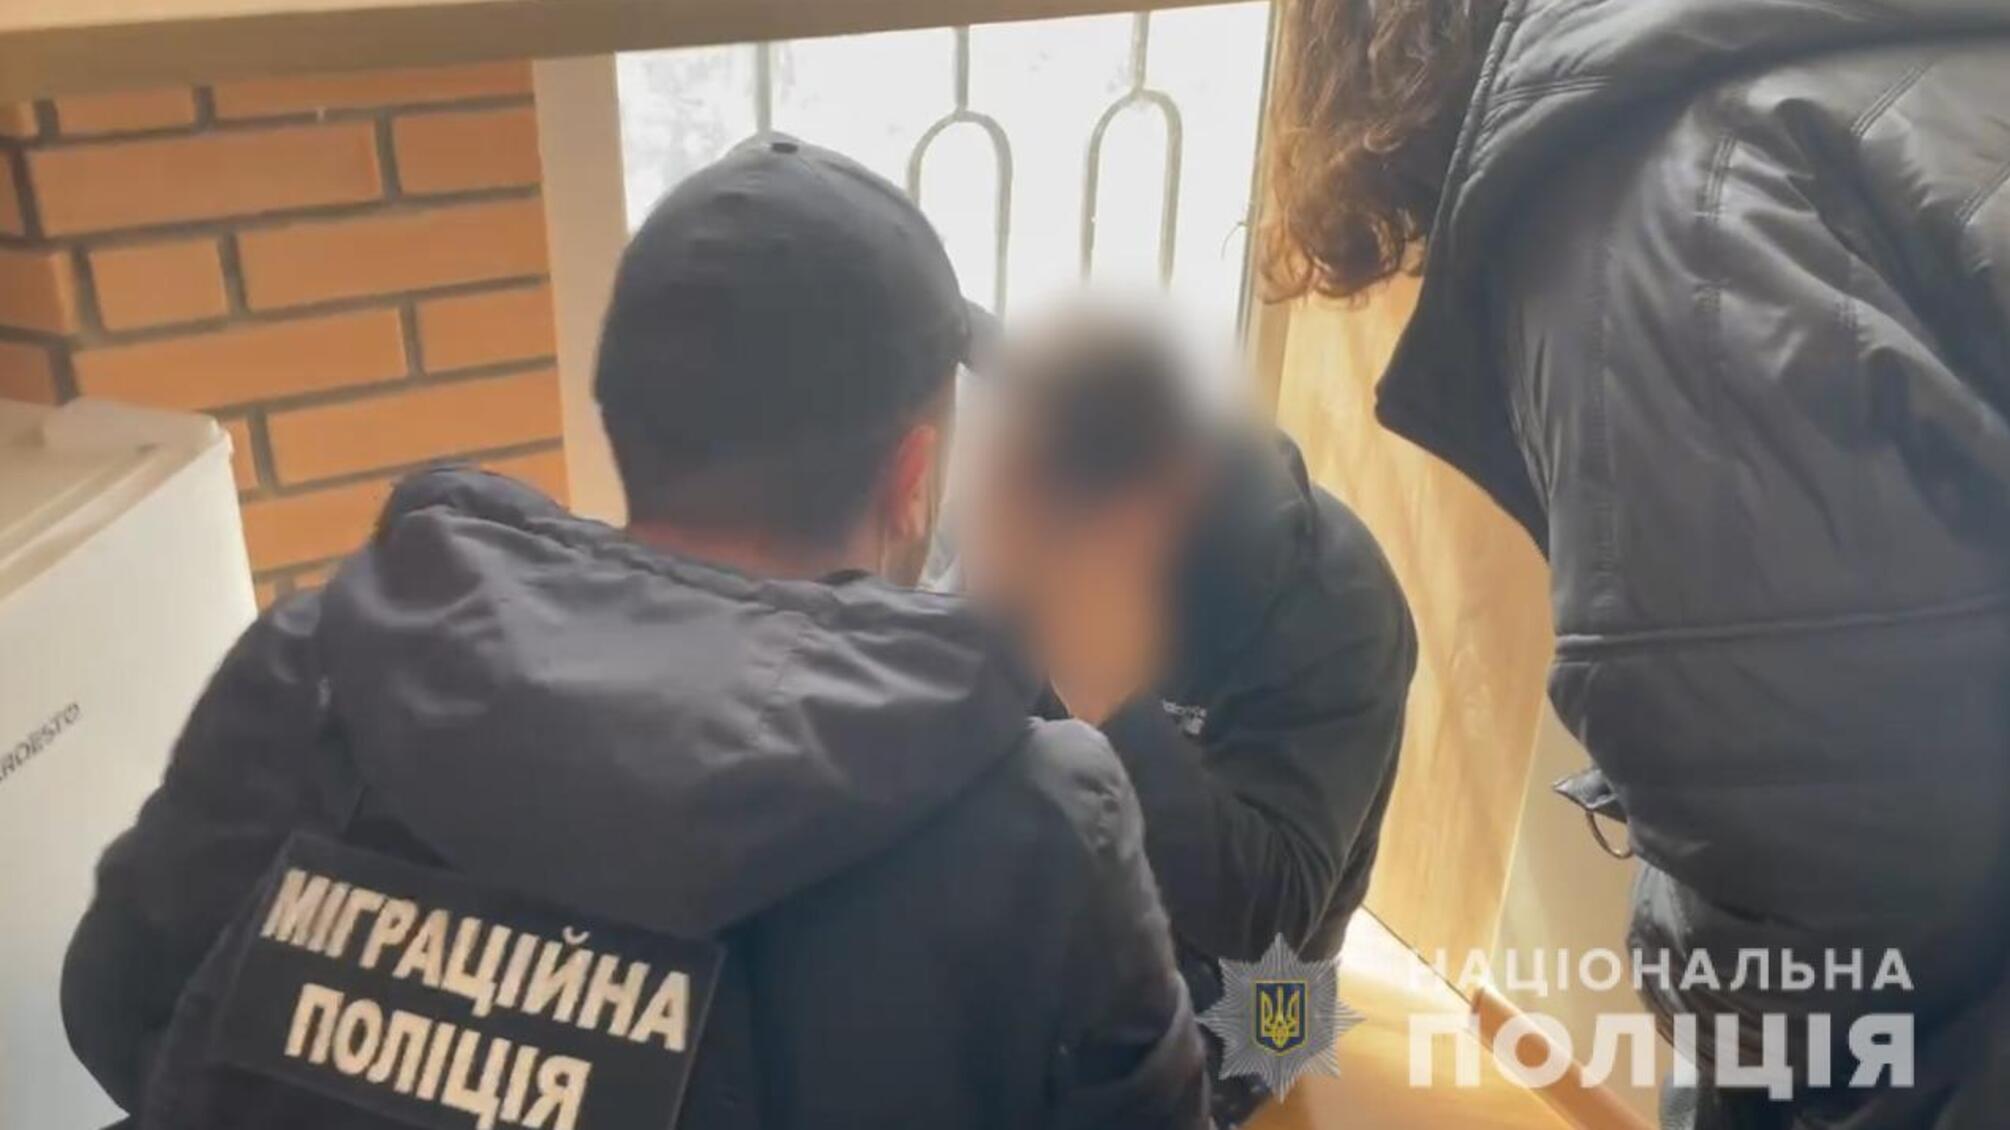 Поліцейська спецоперація на Одещині: звільнено двох іноземців, яких викрали, тримали в заручниках і катували протягом кількох місяців (ОНОВЛЕНО)